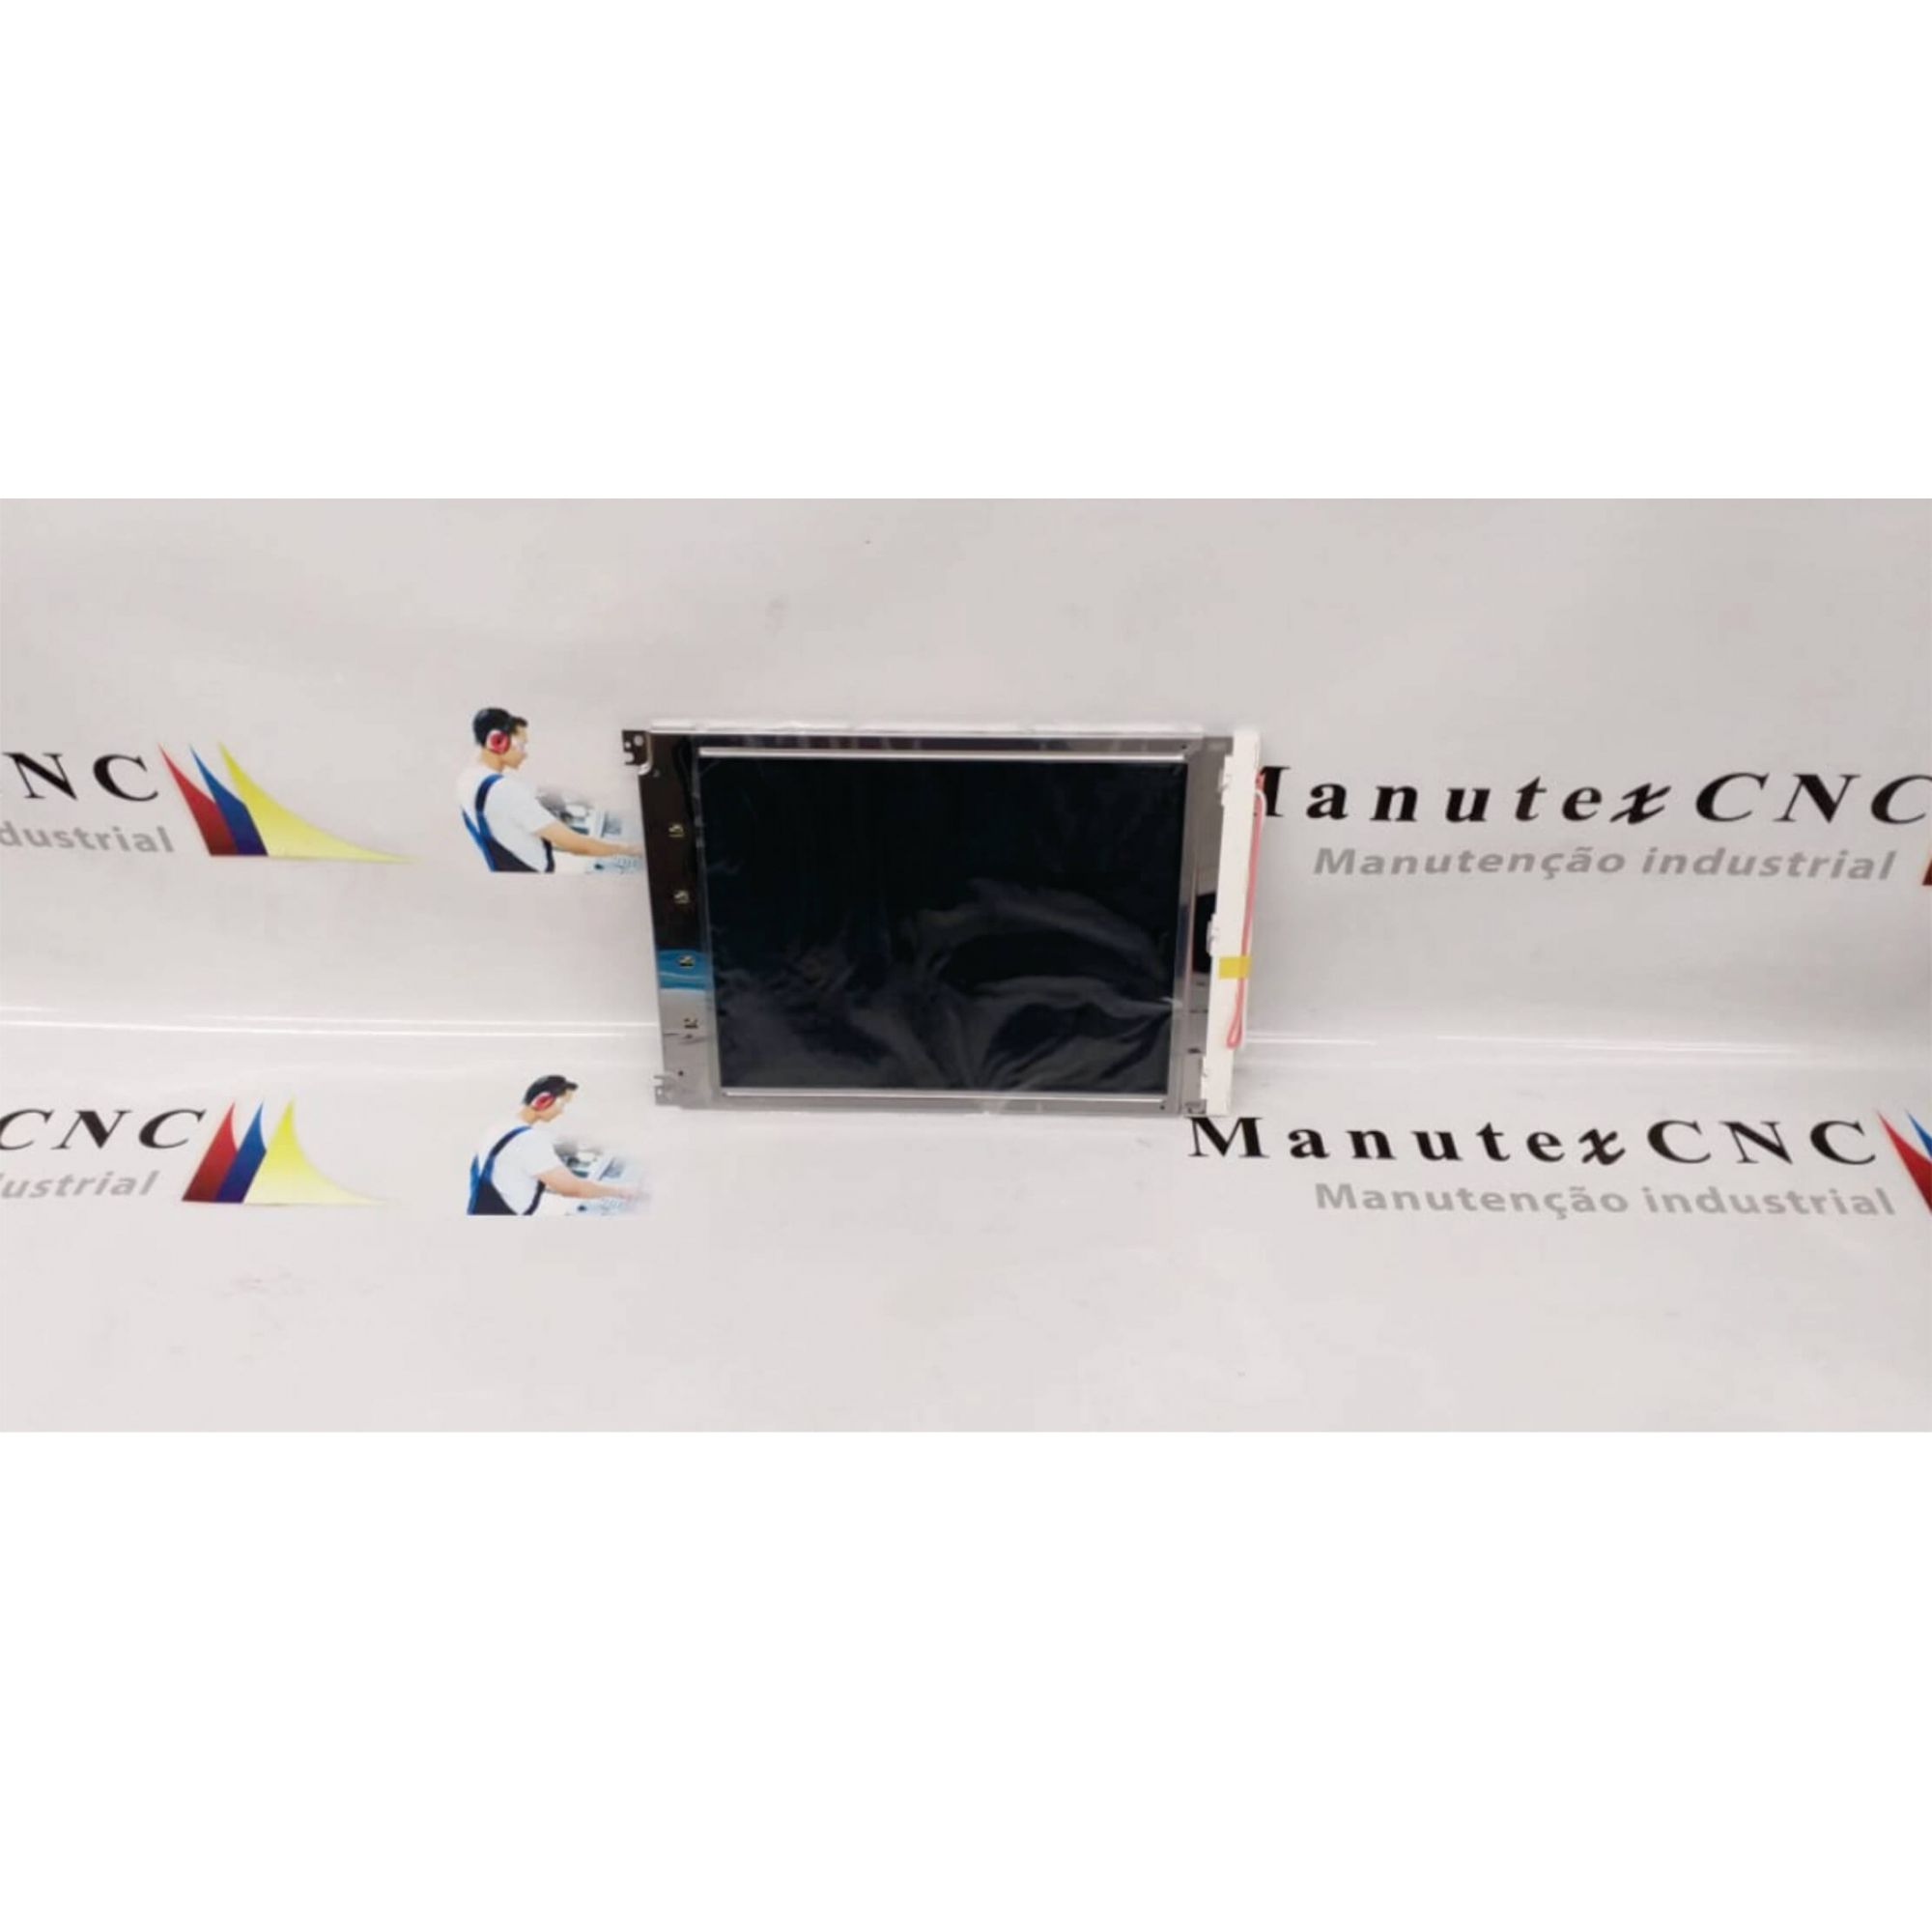 MD800TT10-C1 | DISPLAY LCD | FANUC